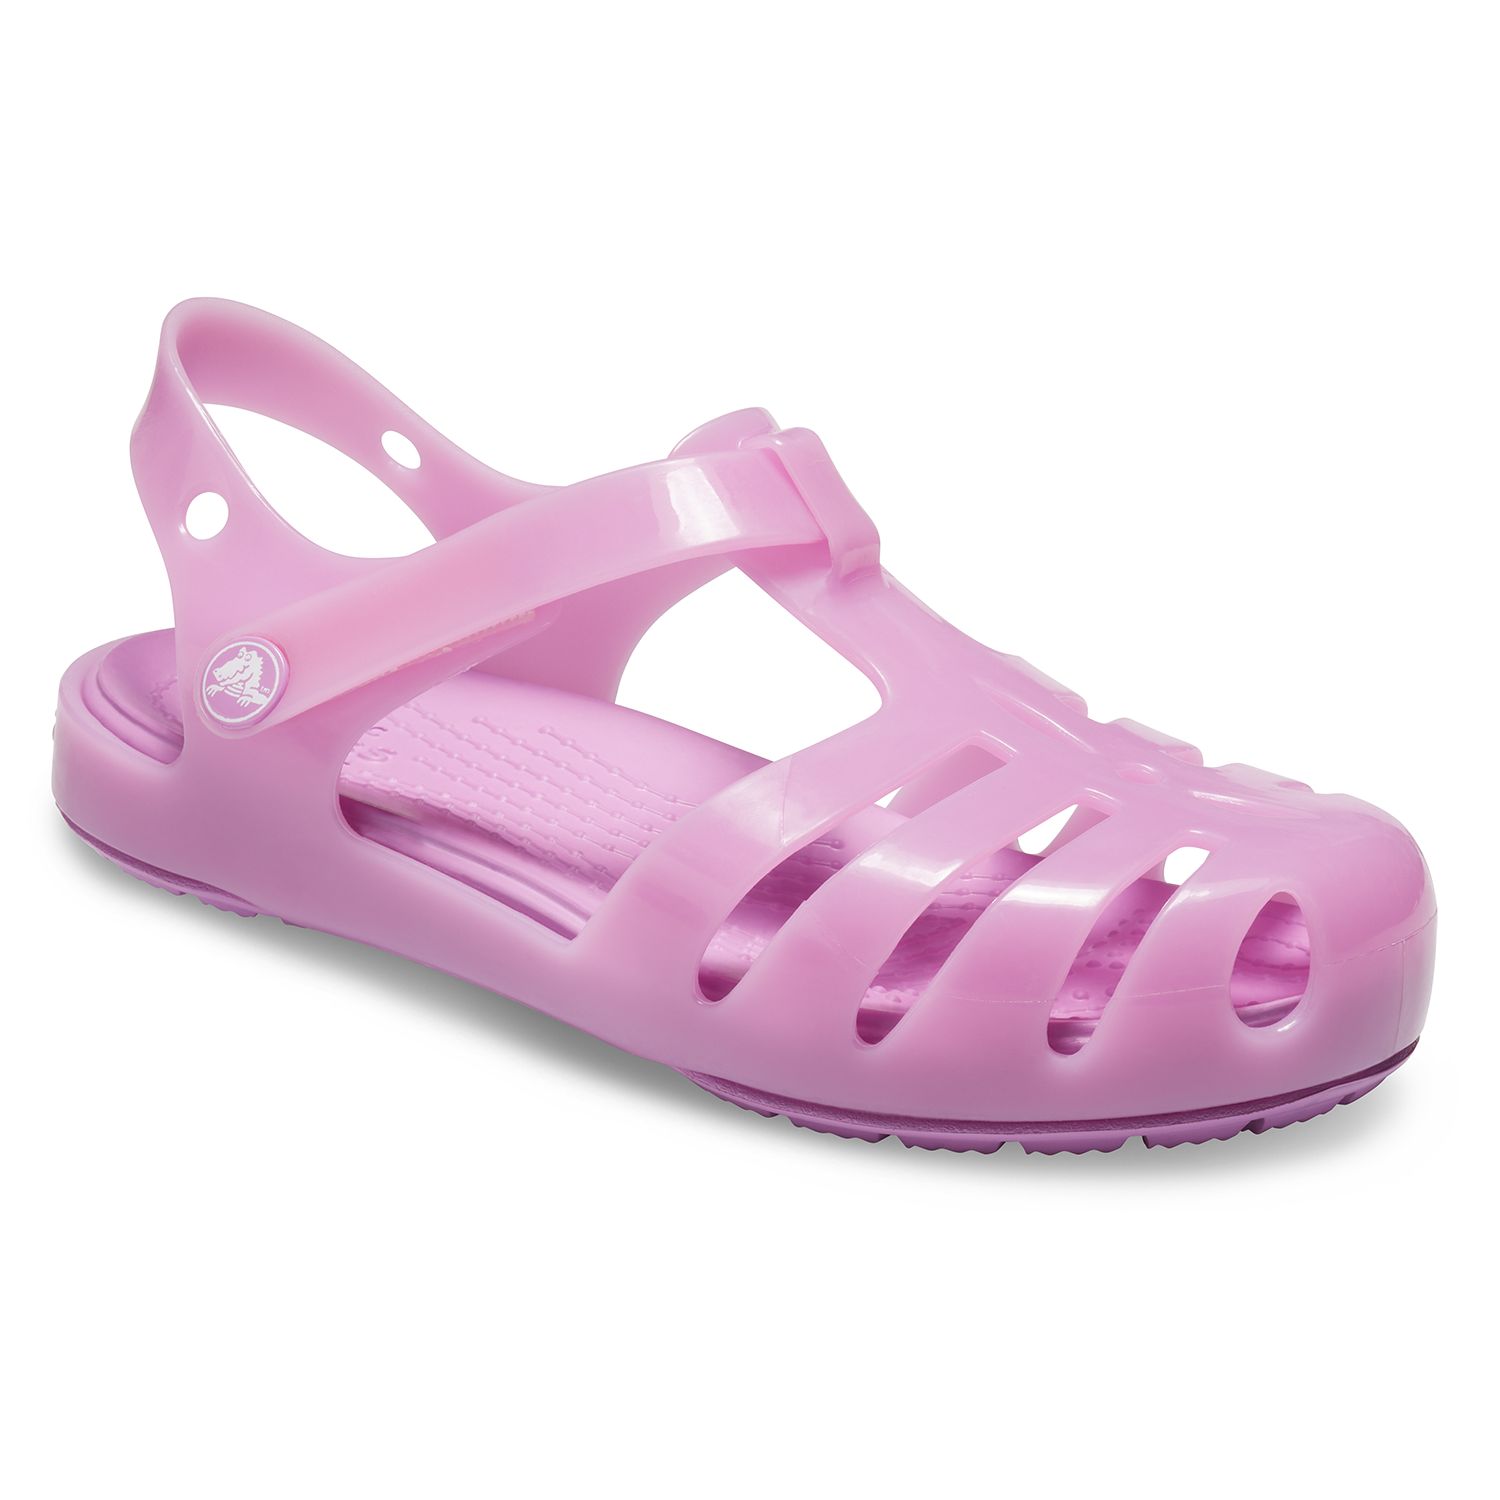 Crocs Isabella Preschool Girls' Sandals